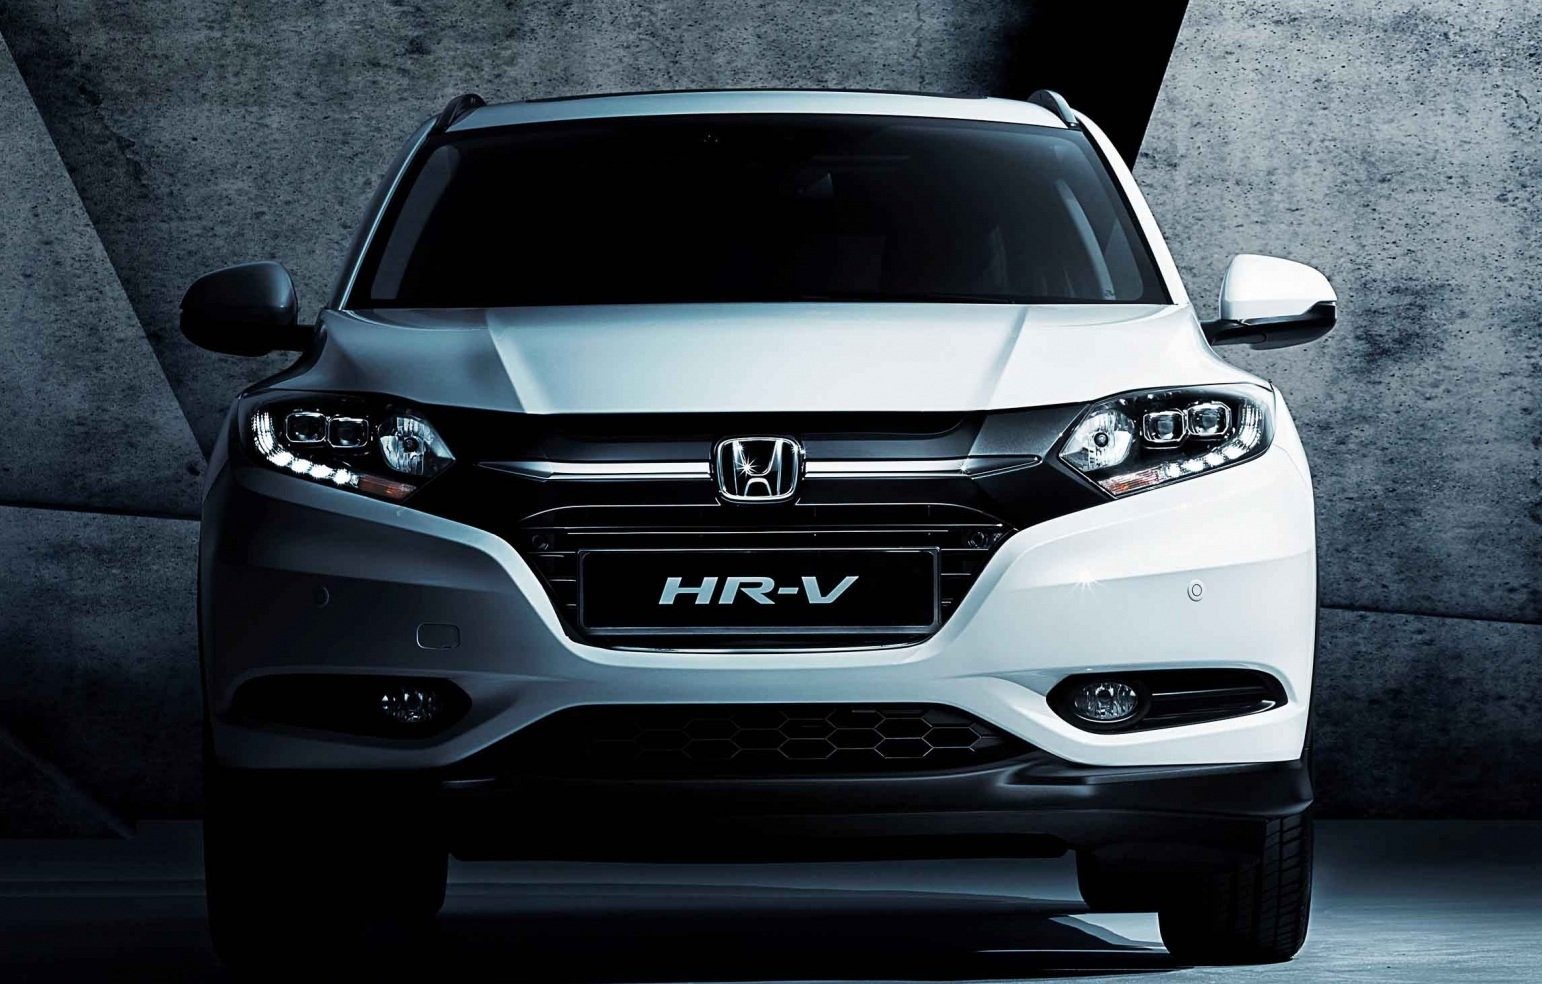 Honda HR-V could have India debut